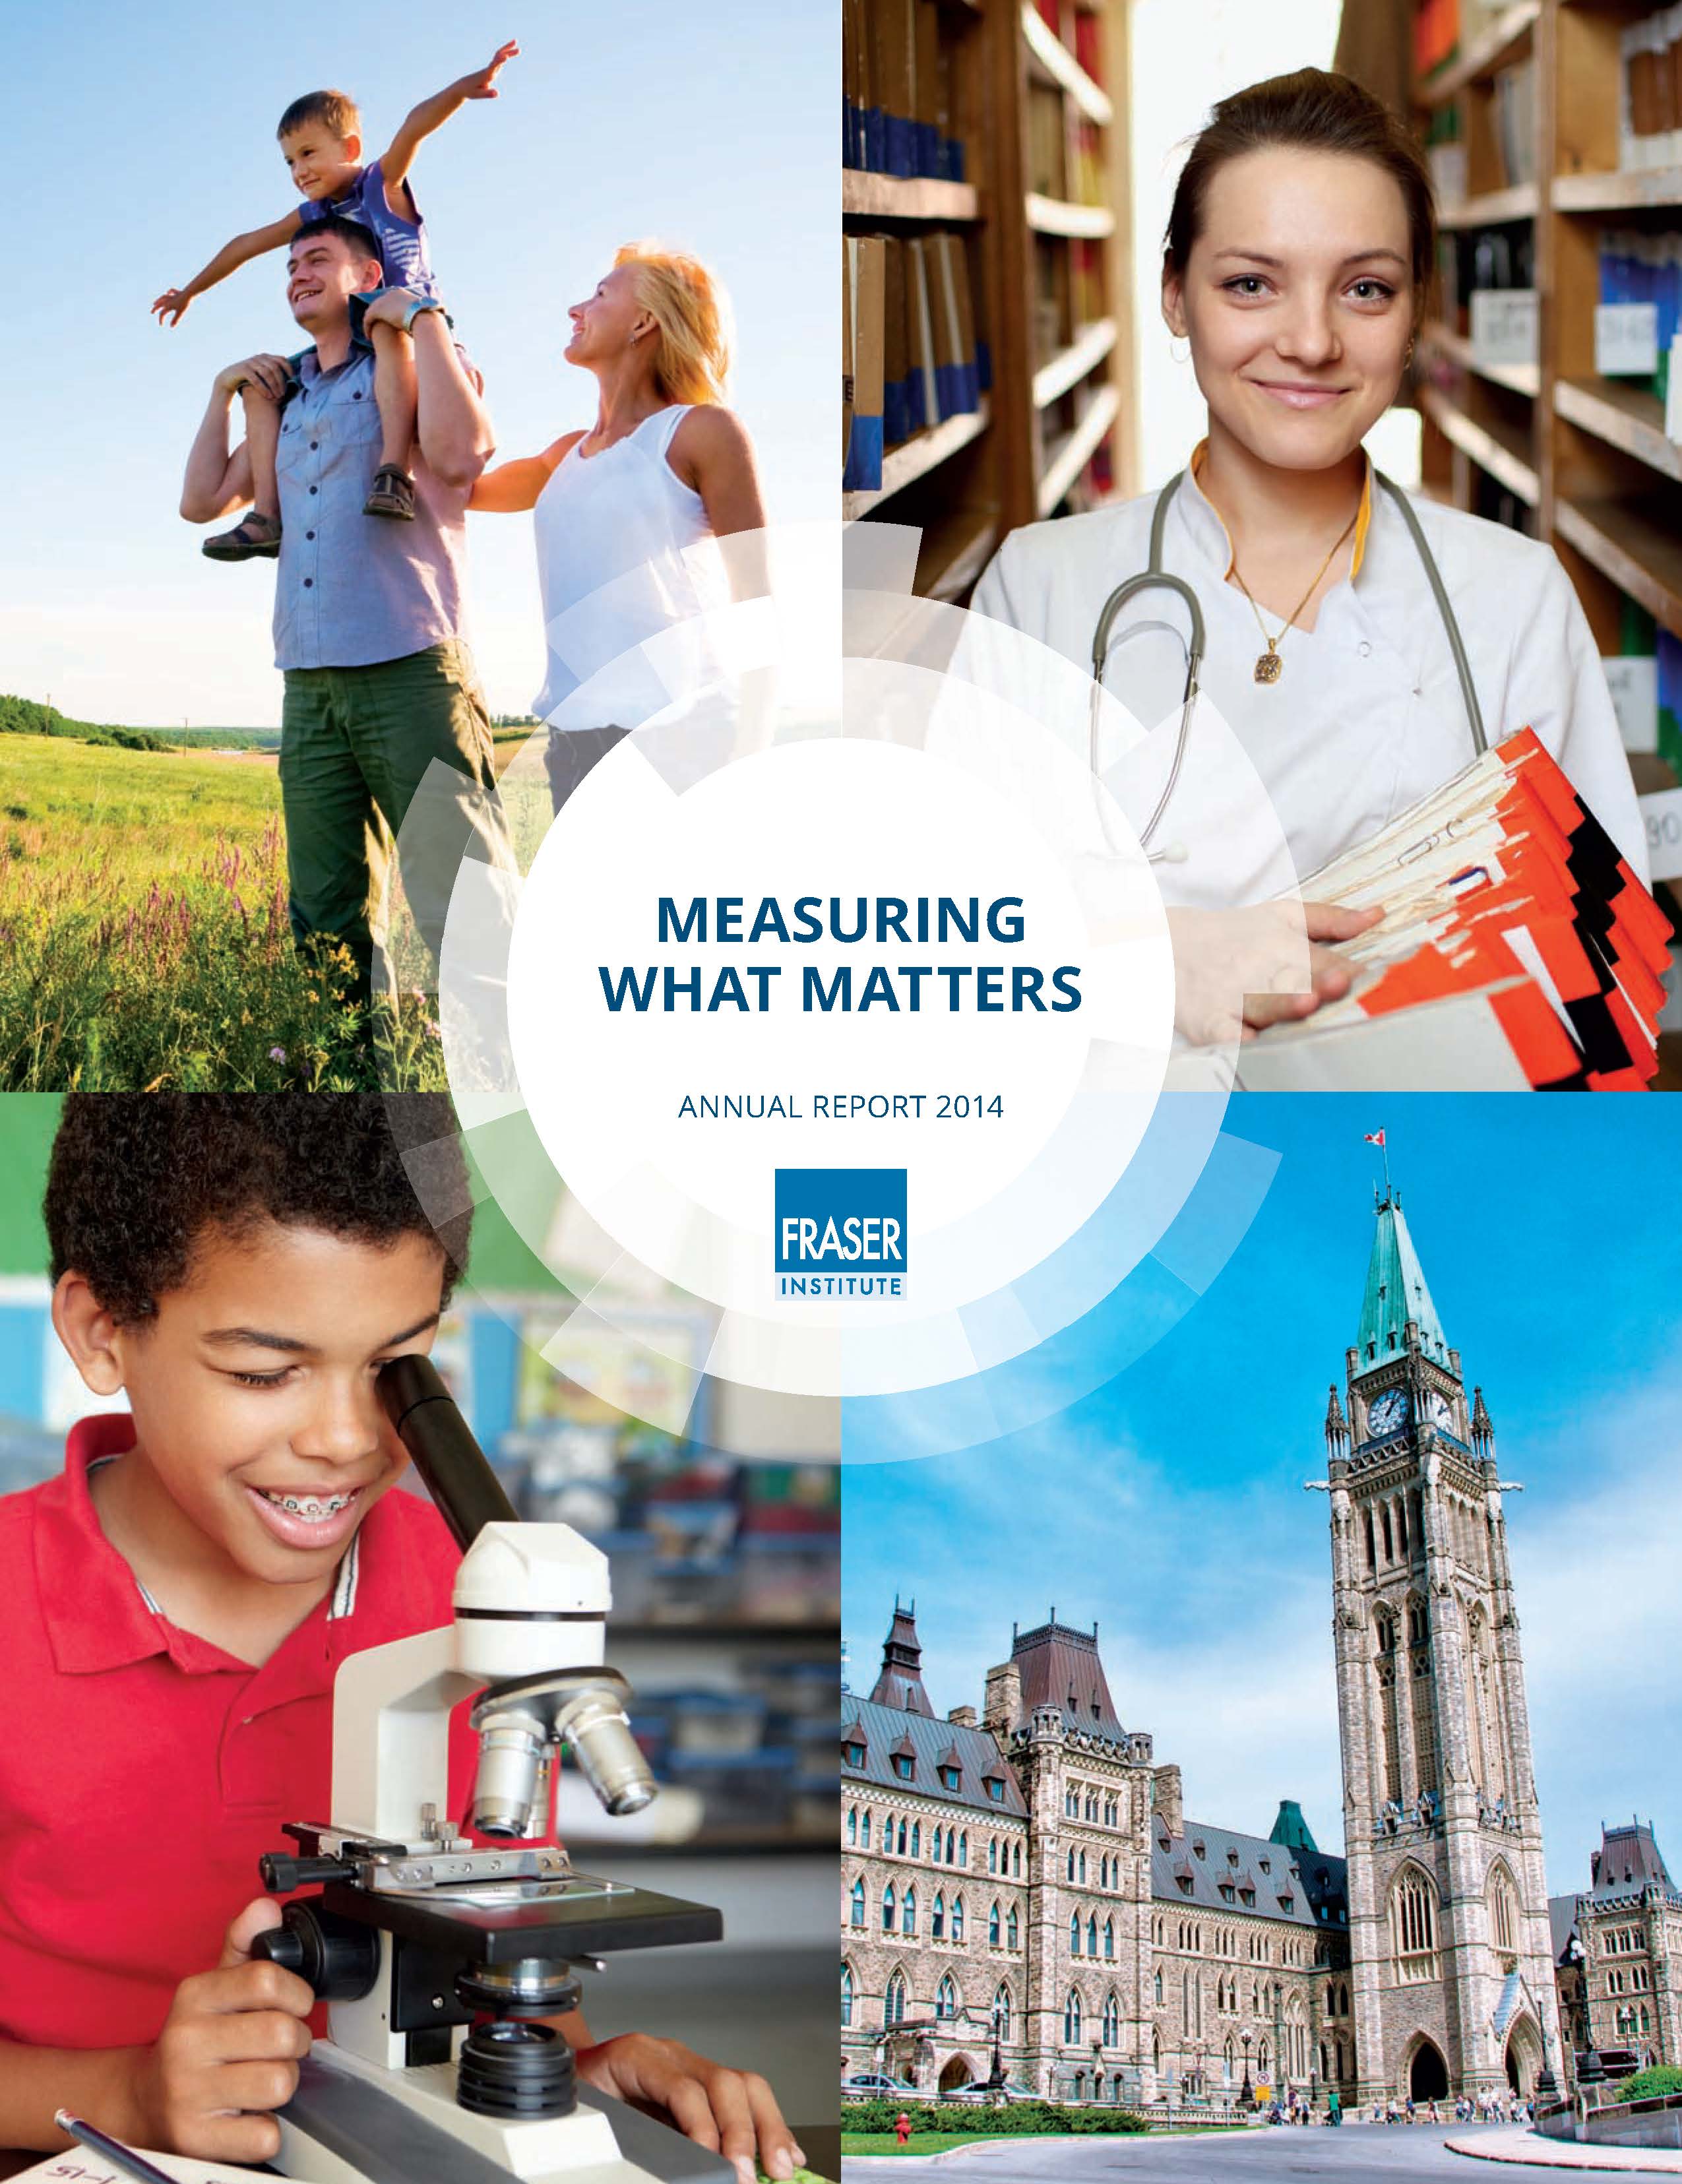 Fraser Institute Annual Report 2014